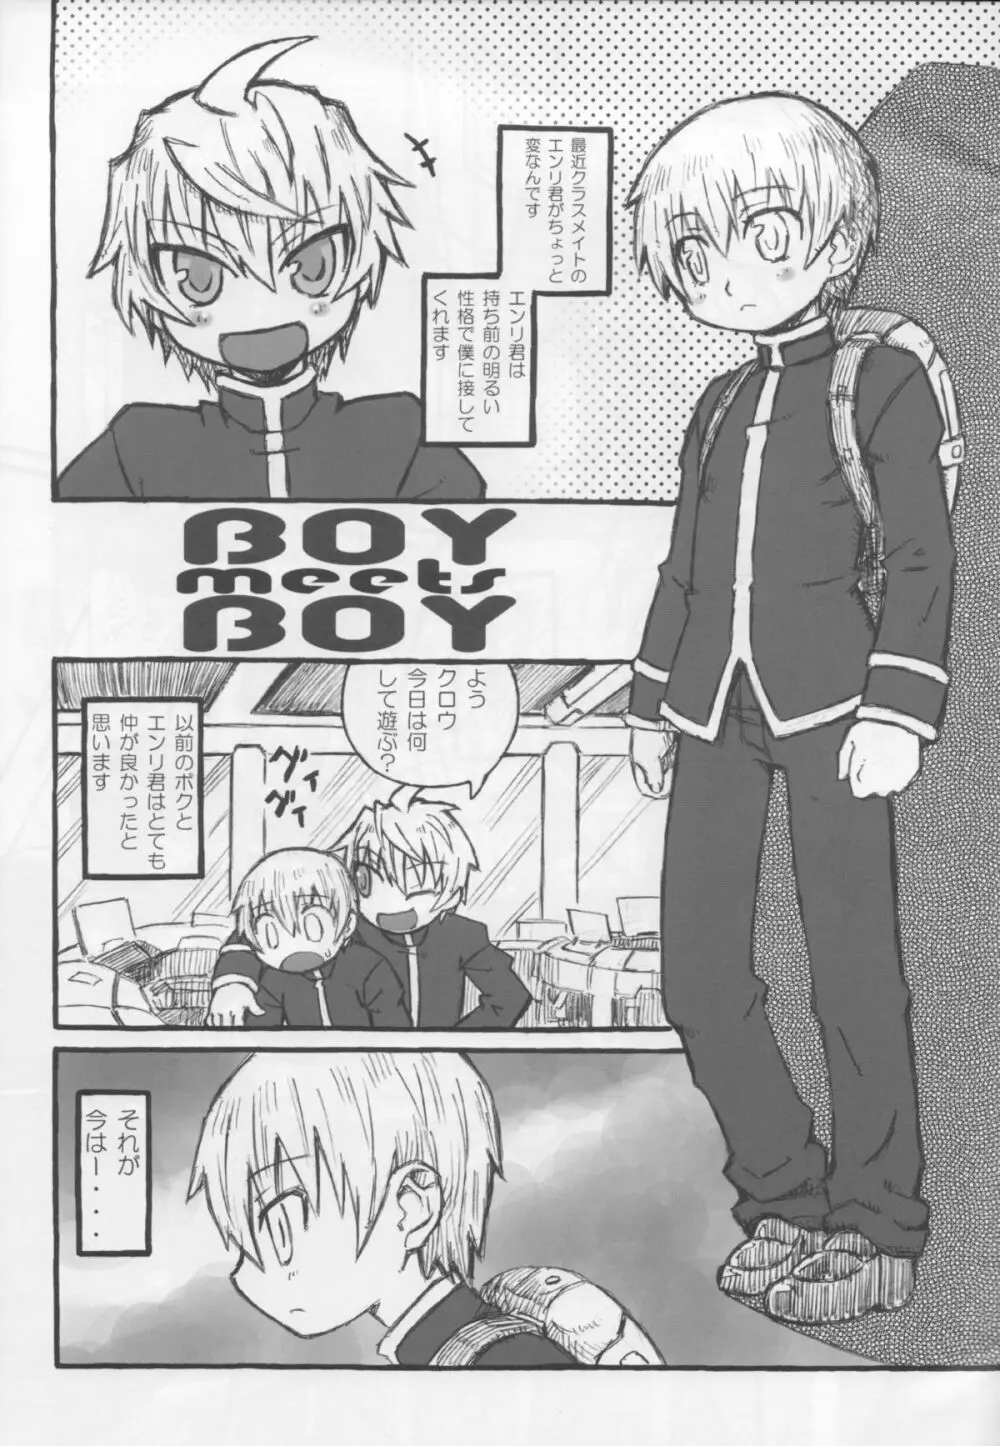 BOY meets BOY 3ページ